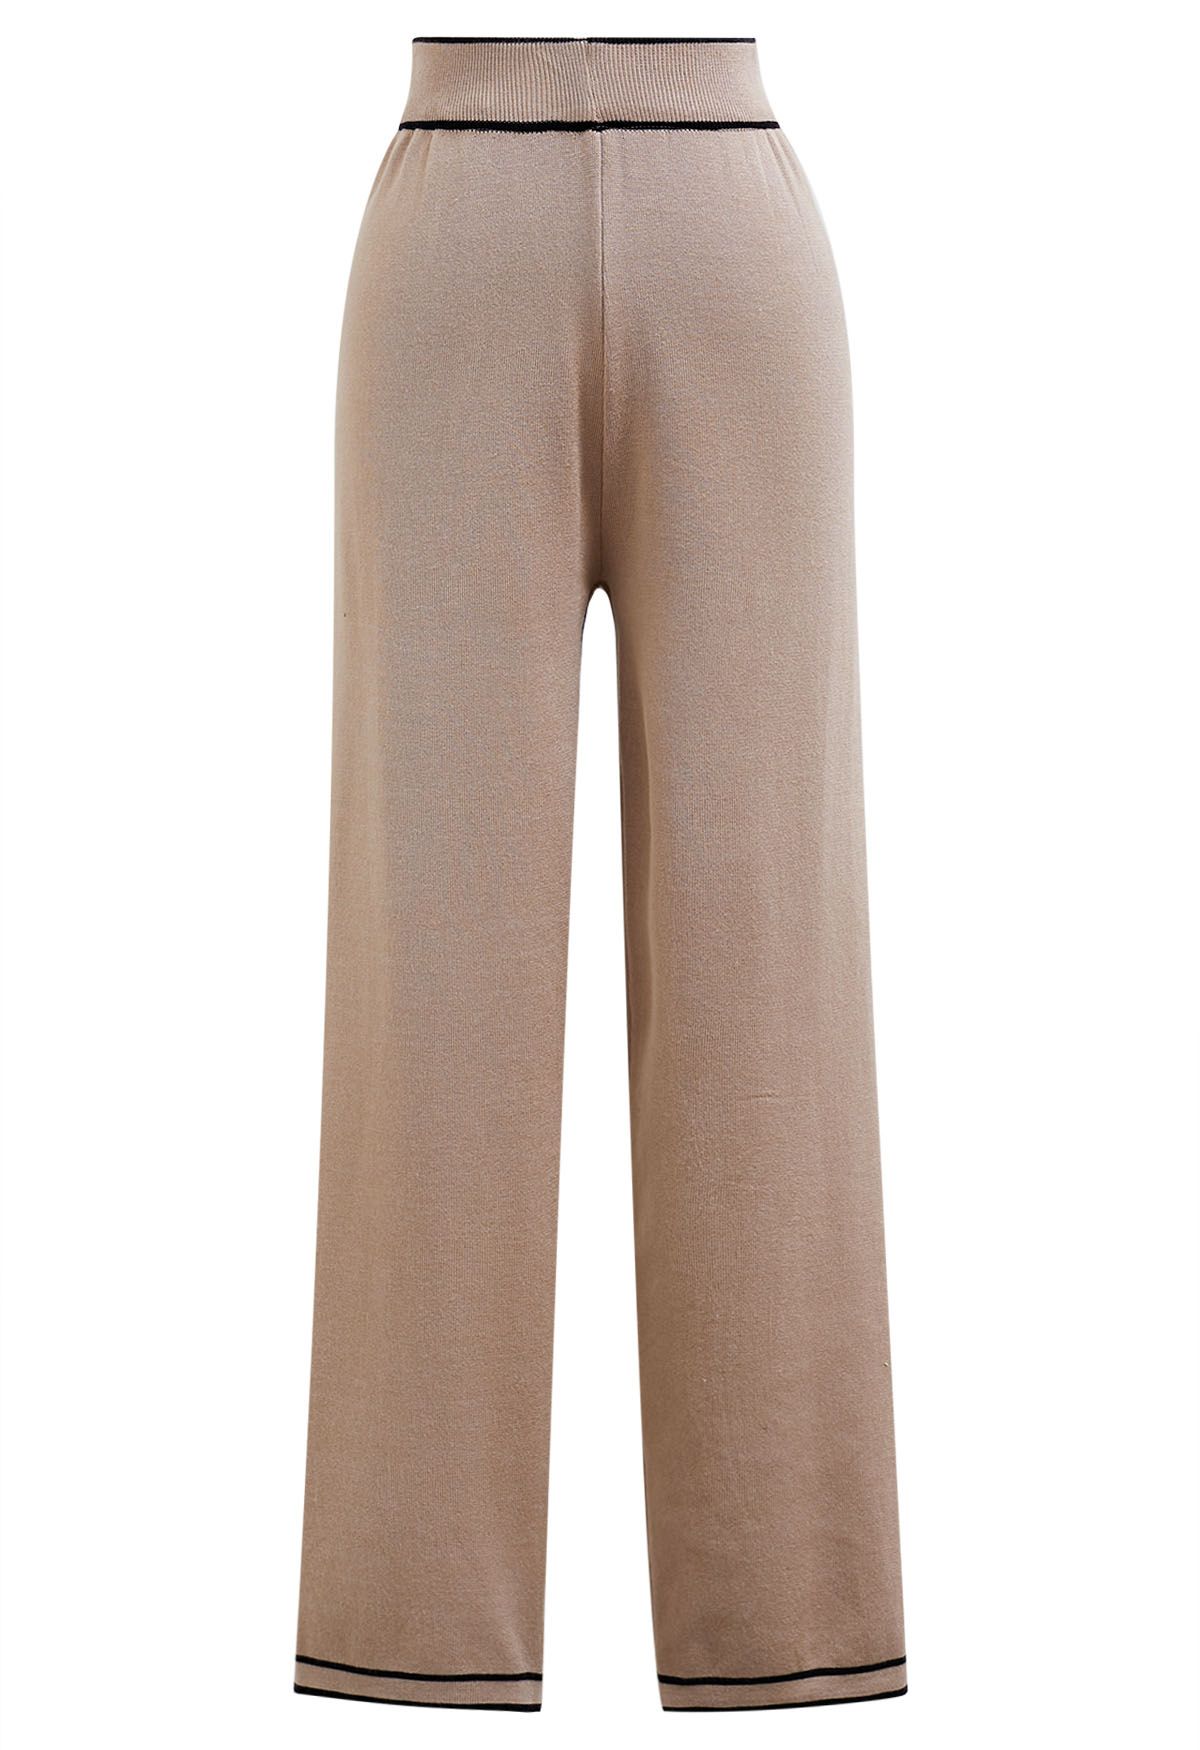 Conjunto de pantalón y cárdigan de punto con botones en contraste en color camel